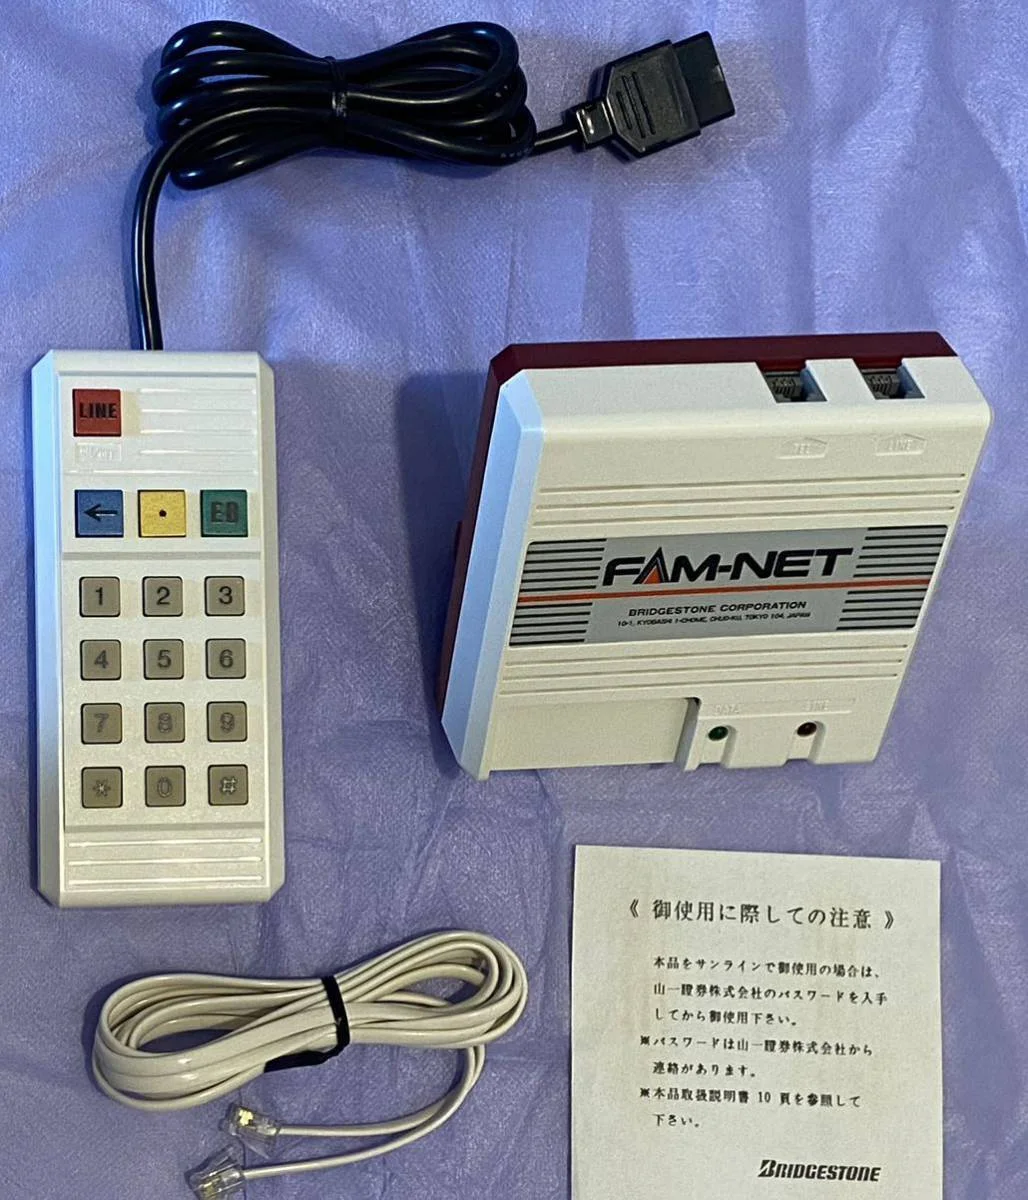  Famicom FAM-NET II Network Adapter